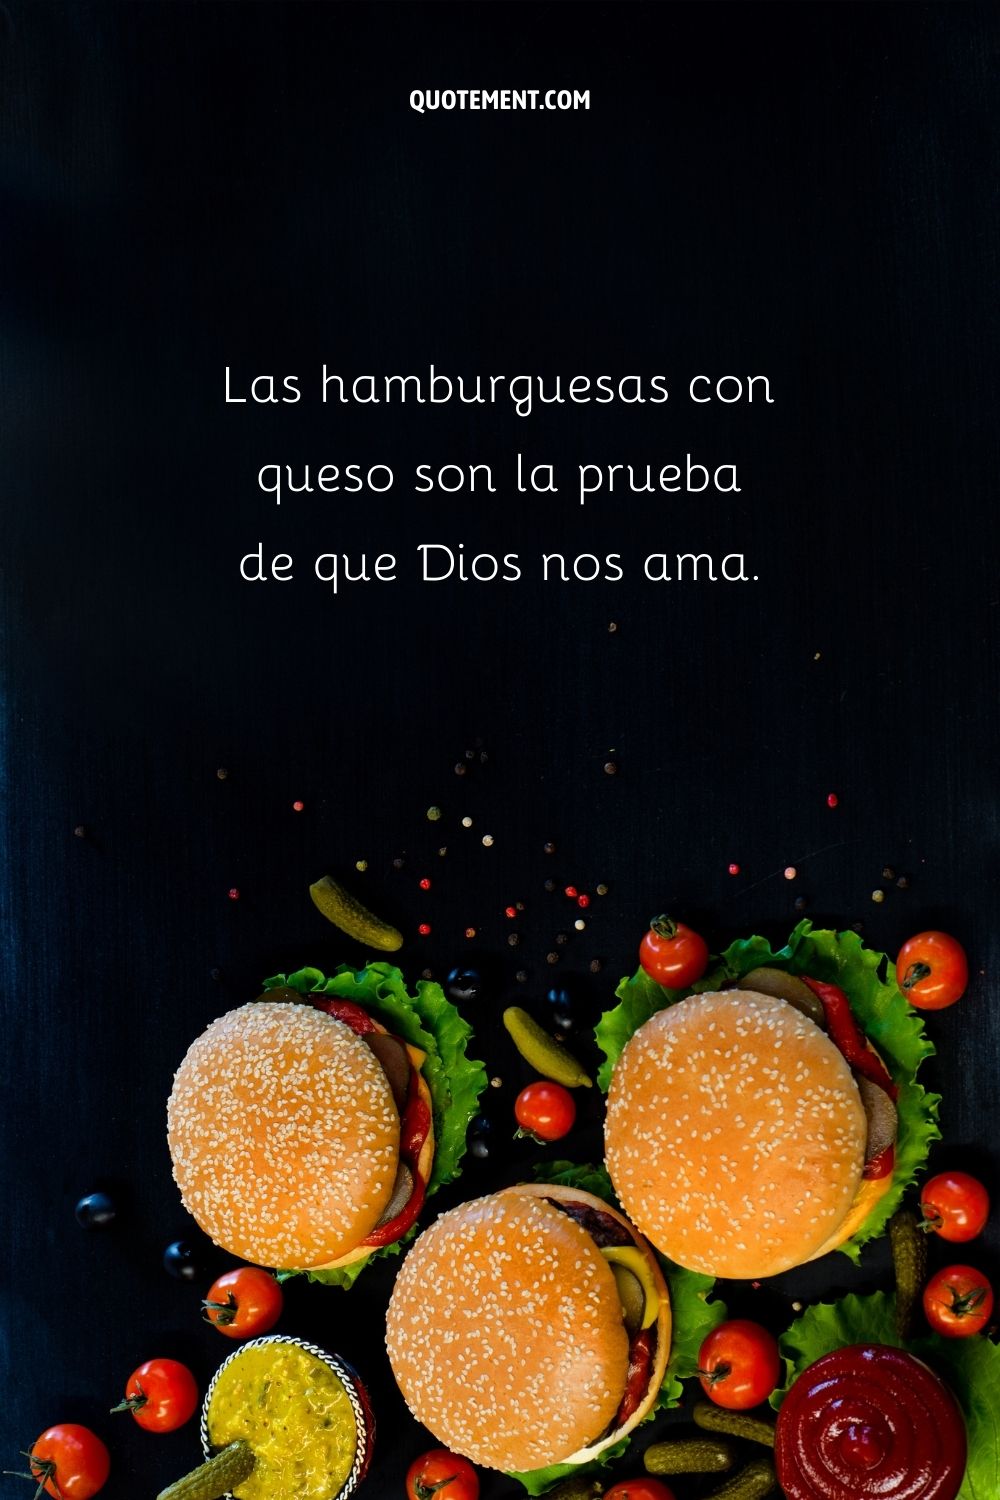 Las hamburguesas con queso son la prueba de que Dios nos ama.